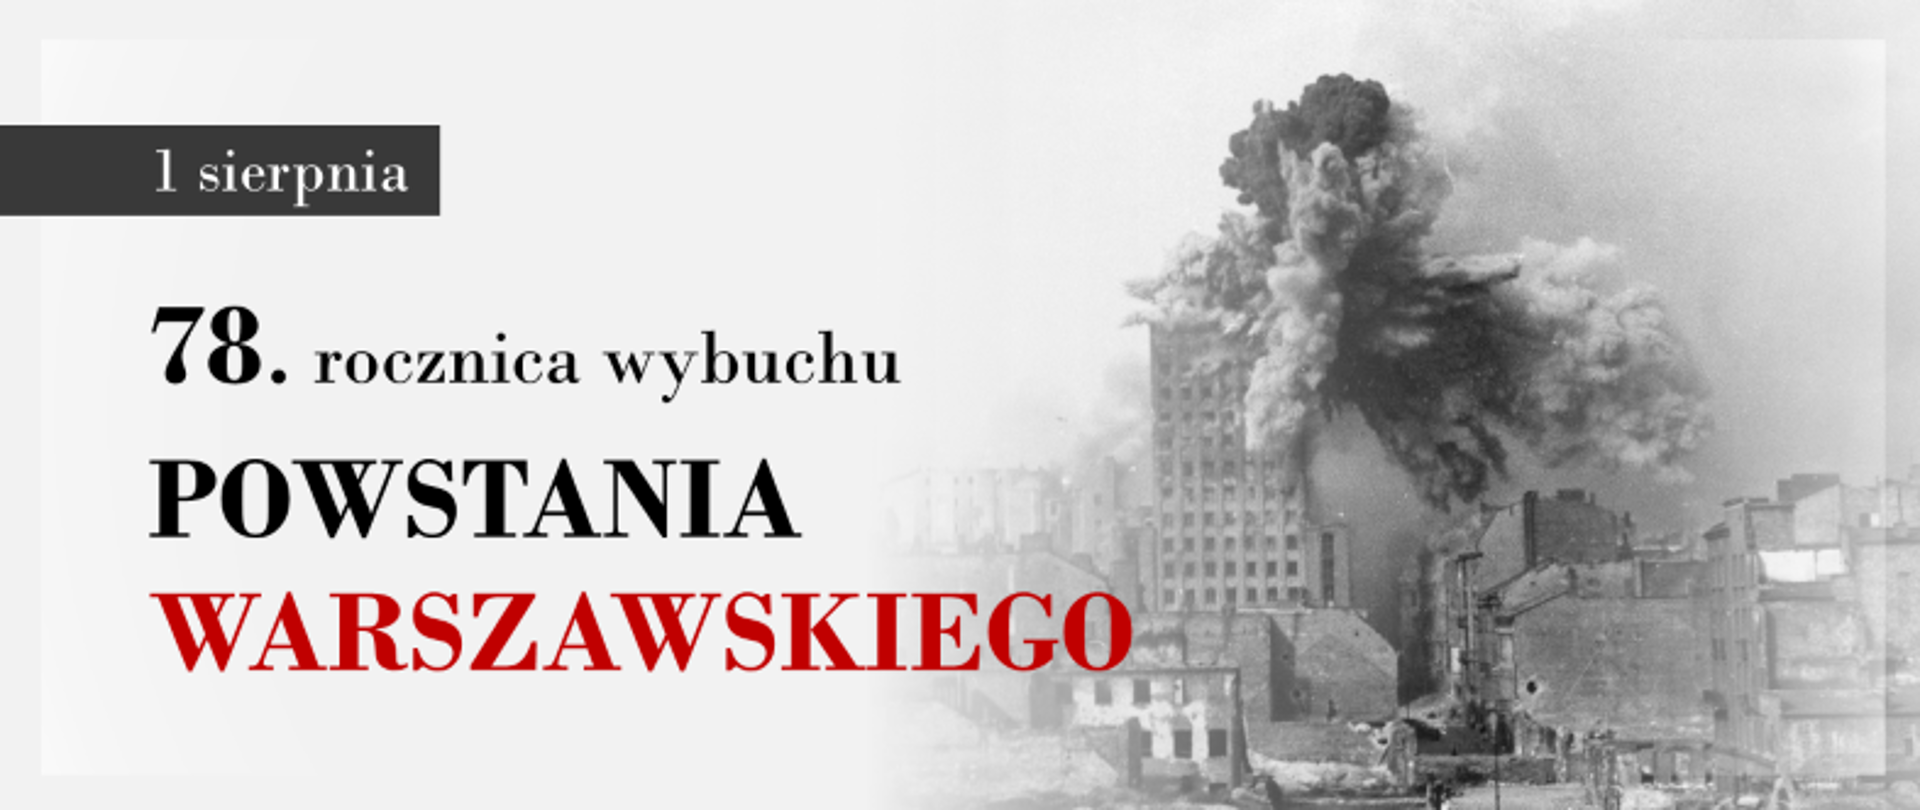 Grafika - zdjęcie z ostrzału budynku Pasty w Warszawie i napis 1 sierpnia - 78. rocznica wybuchu Powstania Warszawskiego.